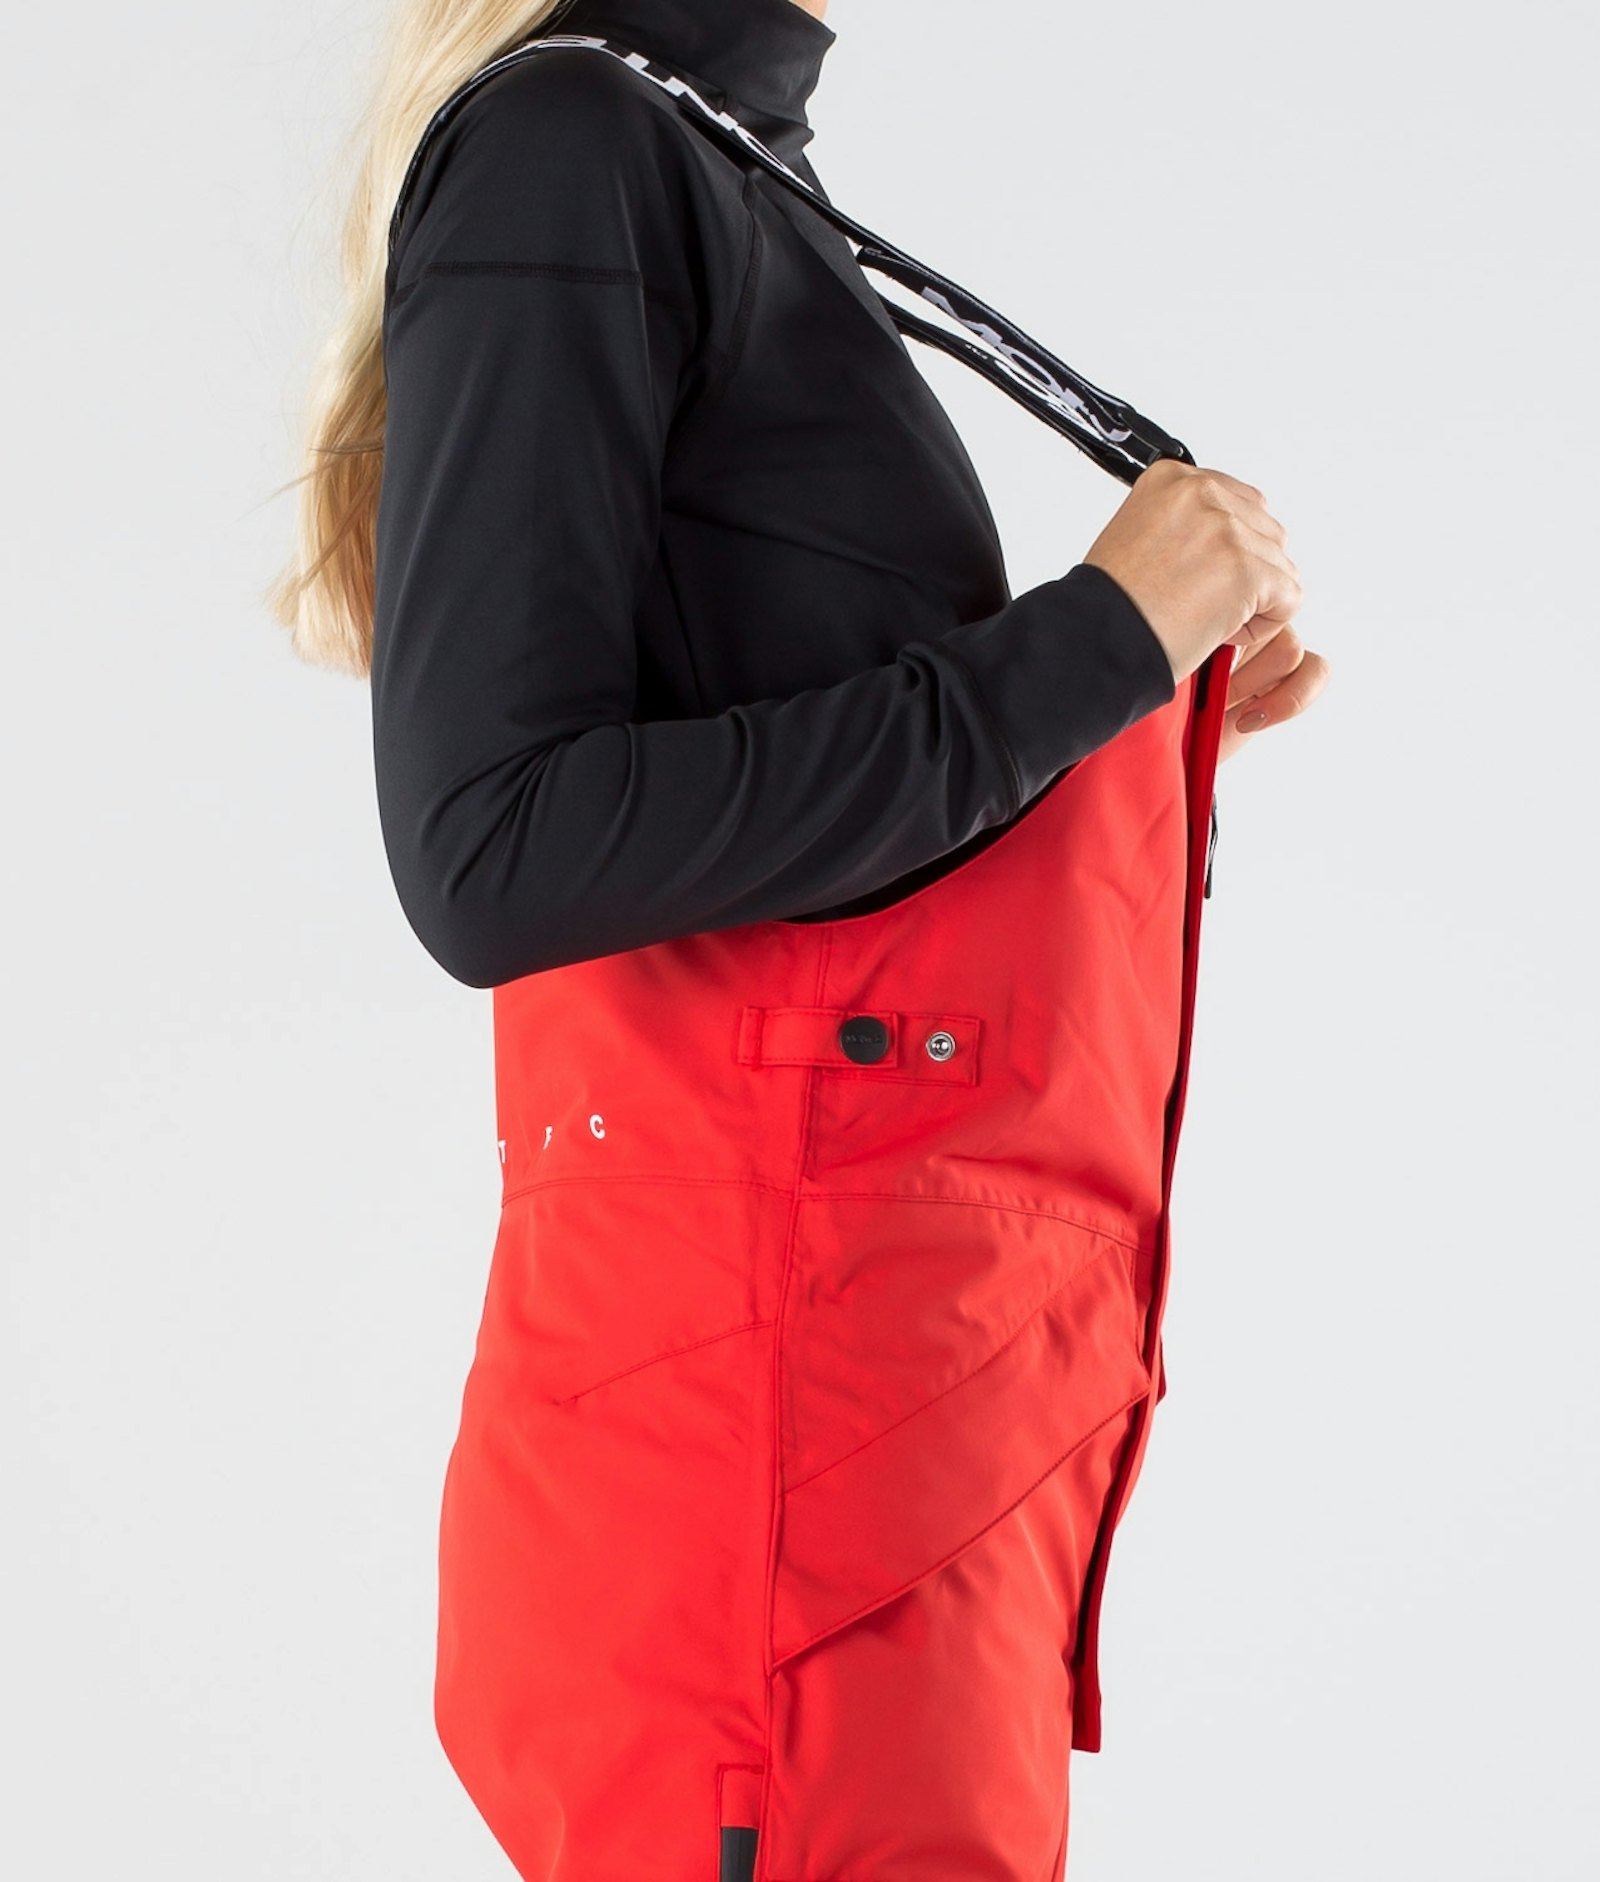 Fawk W 2019 Spodnie Narciarskie Kobiety Red